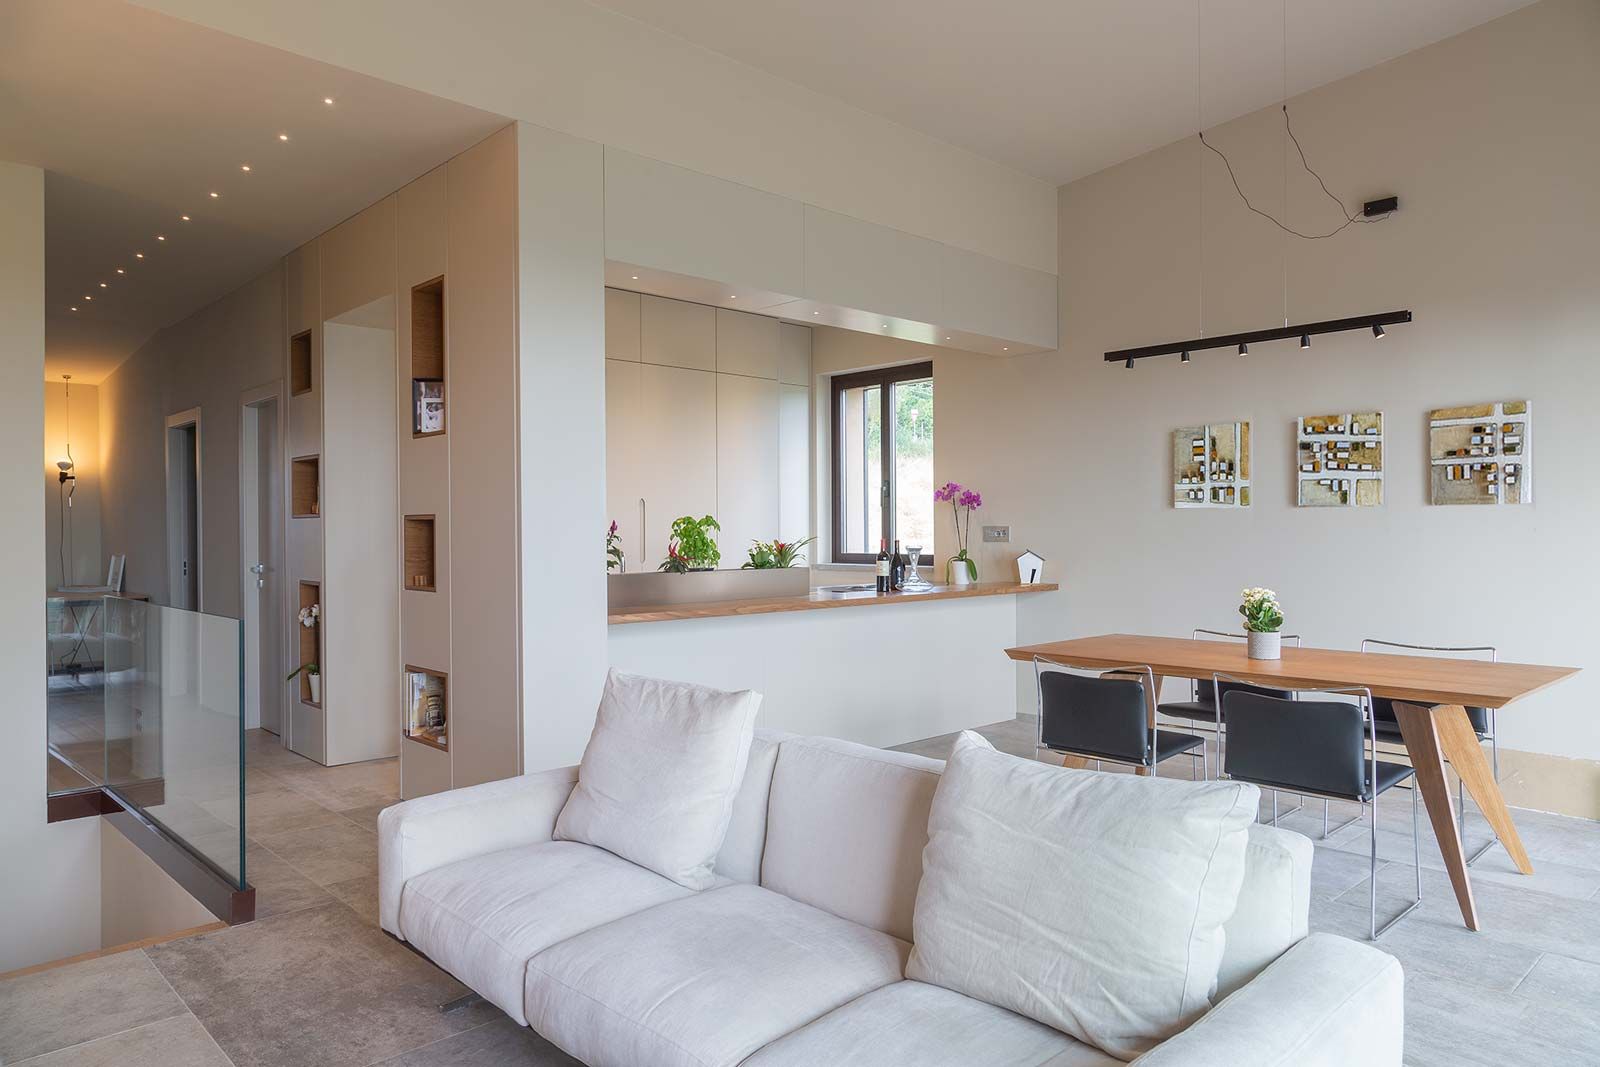 Zona living in stile minimalista con divano bianco Soffici e Galgani Architetti Soggiorno minimalista cucina,pranzo,divano,flexform